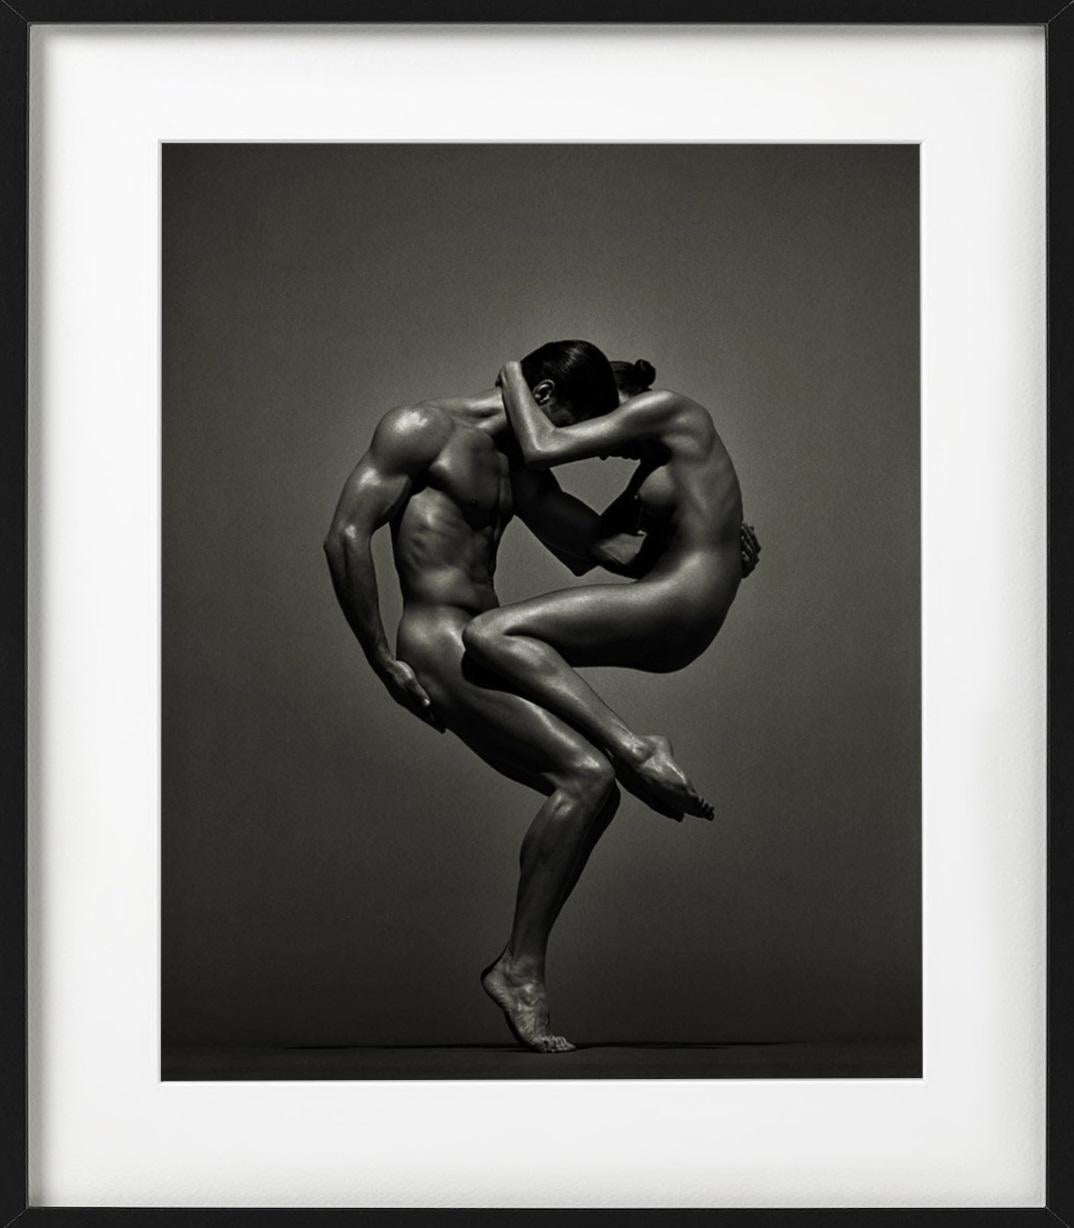 Sina&Anthony, Wien - Doppelakt in sportlicher Pose, Kunstfotografie, 1995 (Schwarz), Figurative Photograph, von Andreas H. Bitesnich